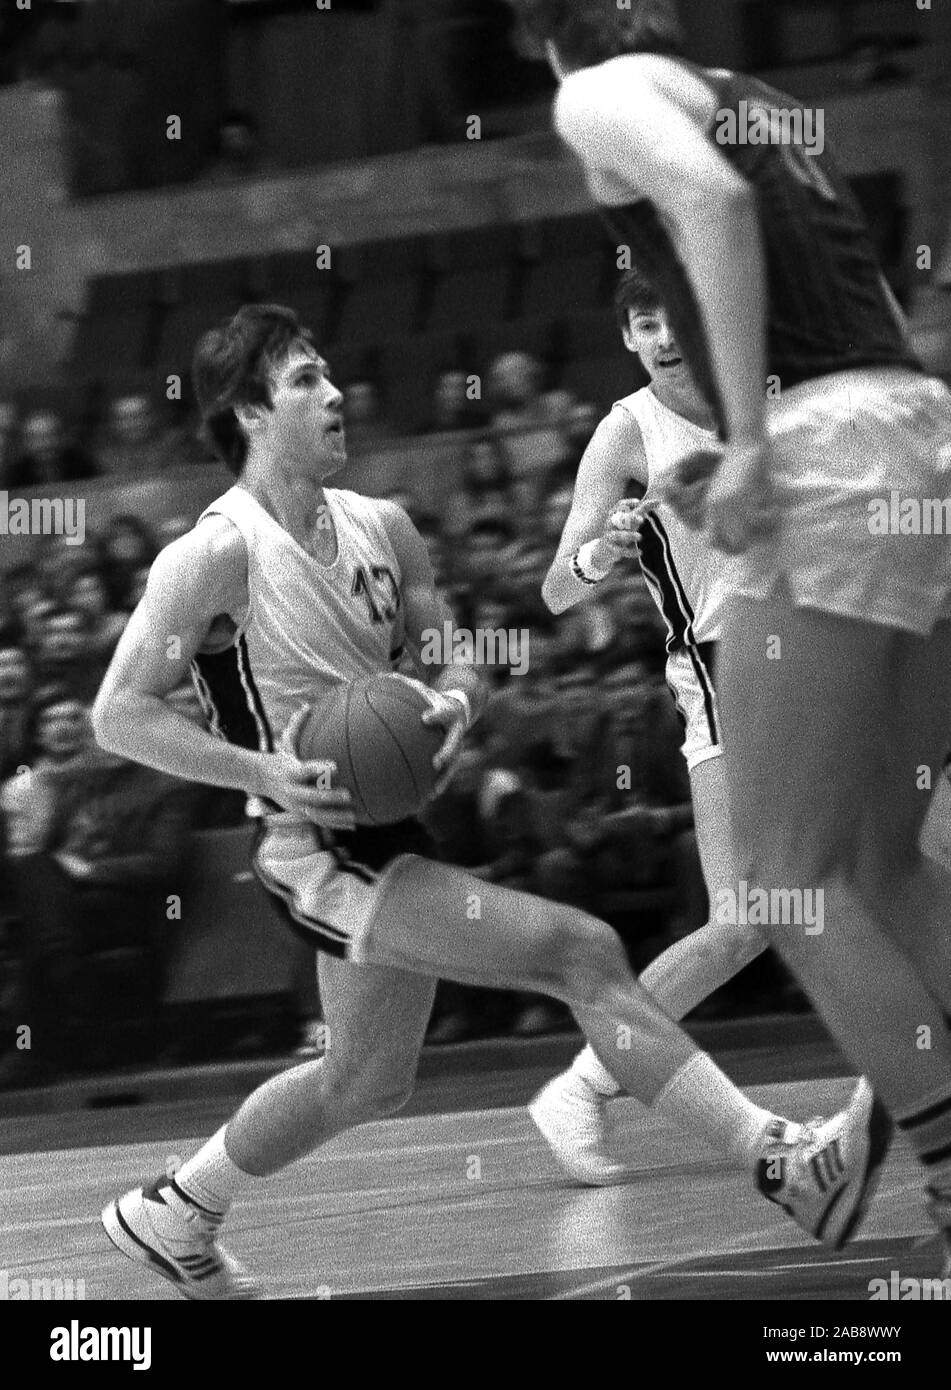 Connu comme le premier joueur soviétique dans la NBA, Sarunas Marciulionis a été une légende. La Lituanie, Vilnius, 1987 03 03 Banque D'Images